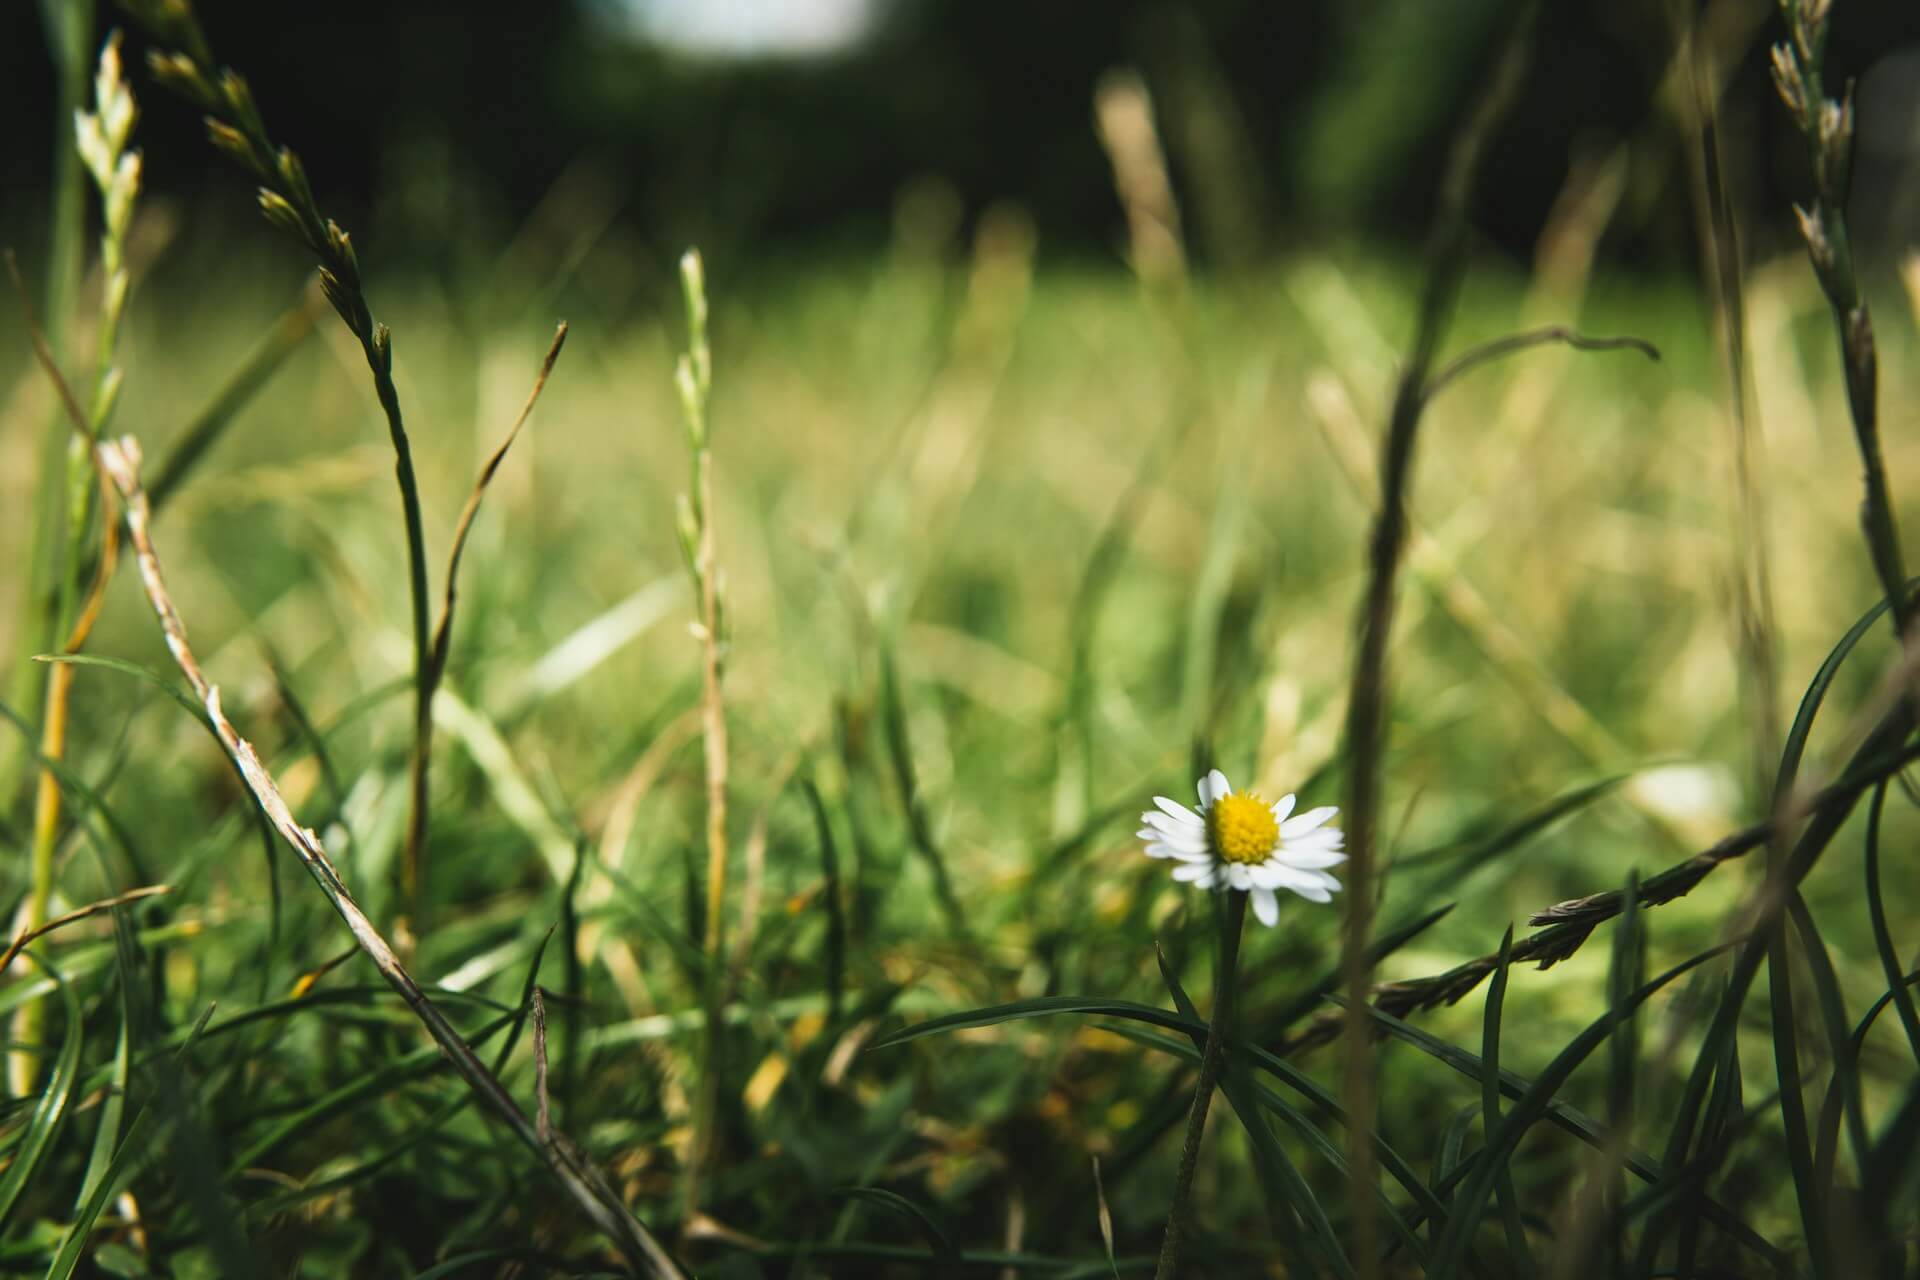 a daisy among a field of green grass